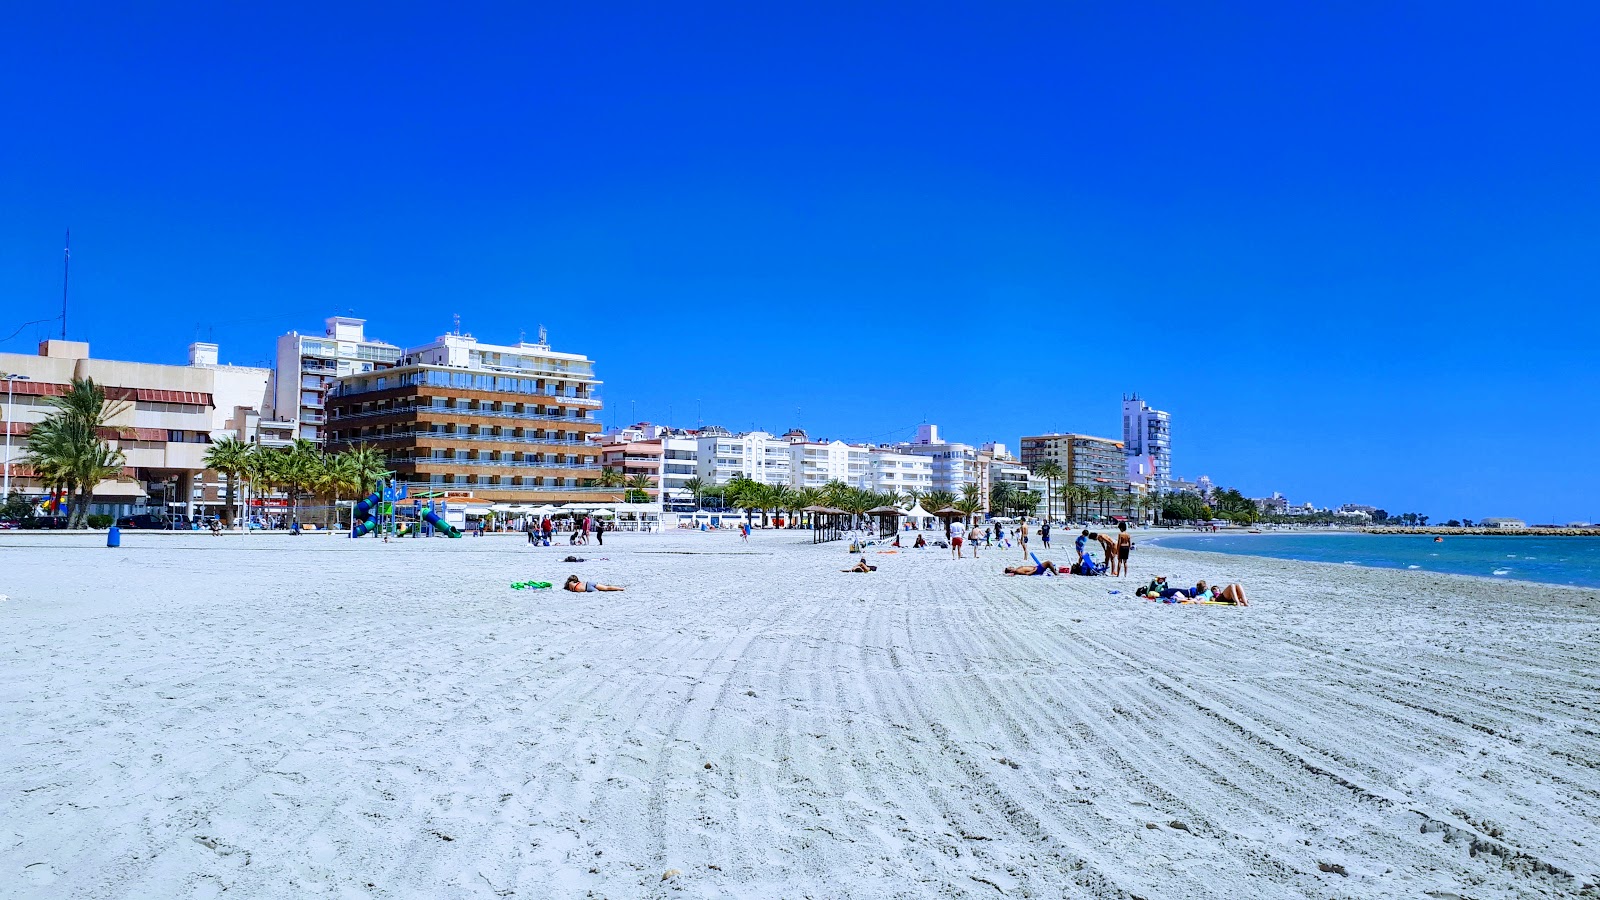 Zdjęcie Beach Santa Pola 2 - popularne miejsce wśród znawców relaksu